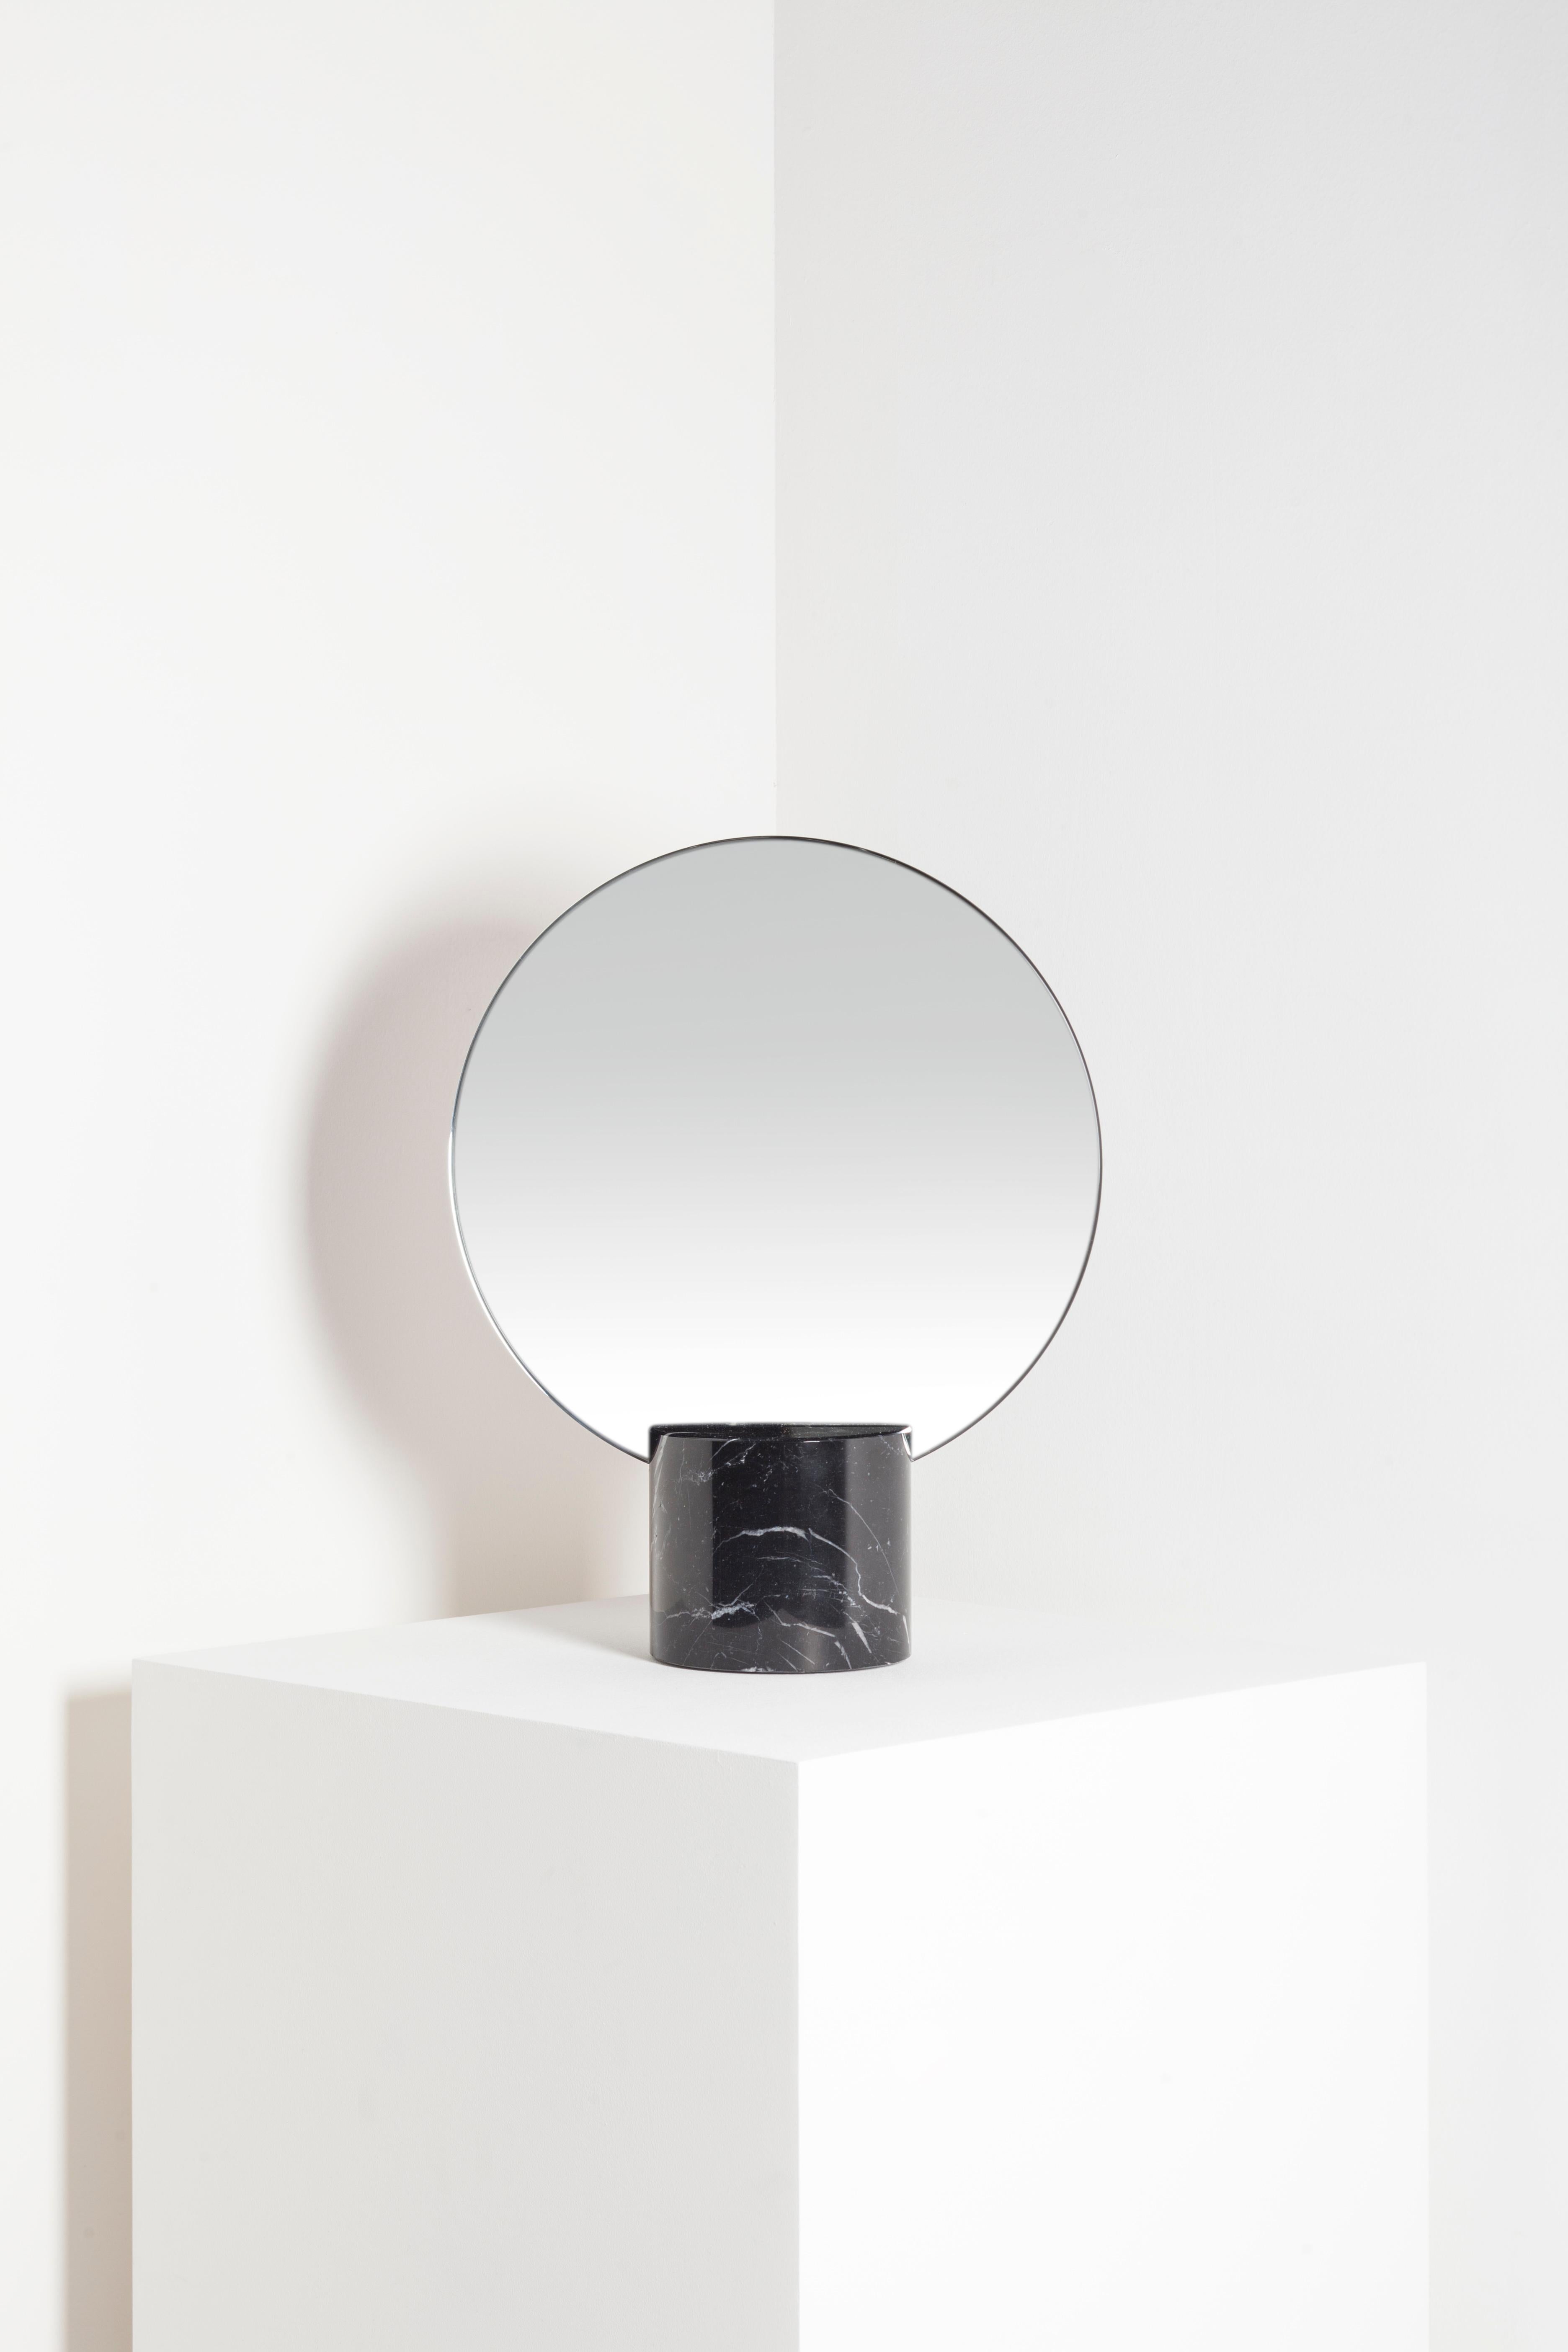 Le miroir Sun est un miroir de table de style minimaliste, fait de marbre et de cuivre. Il s'inspire des anciennes civilisations du bassin méditerranéen, qui ont jeté les bases du concept de beauté que nous connaissons aujourd'hui dans la culture